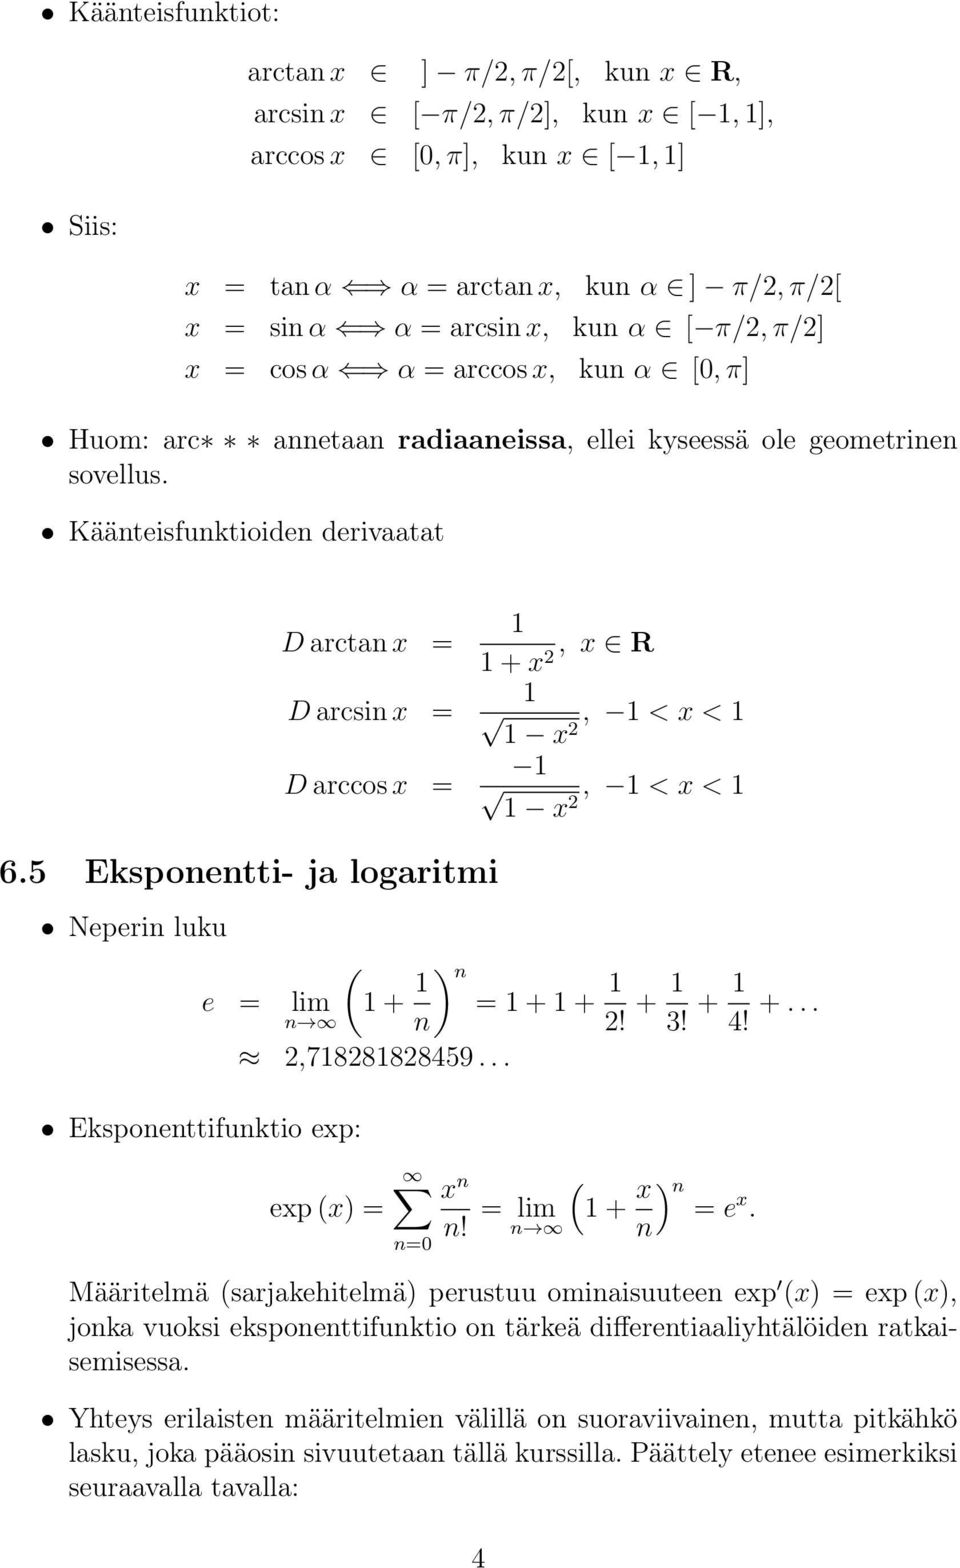 Käänteisfunktioiden derivaatat D arctan x = D arcsin x = D arccos x = + x, x R 2, < x < x 2 x 2, < x < 6.5 Eksponentti- ja logaritmi Neperin luku e = ( lim + ) n = + + n n 2! + 3! + 4! +... 2,7828828459.